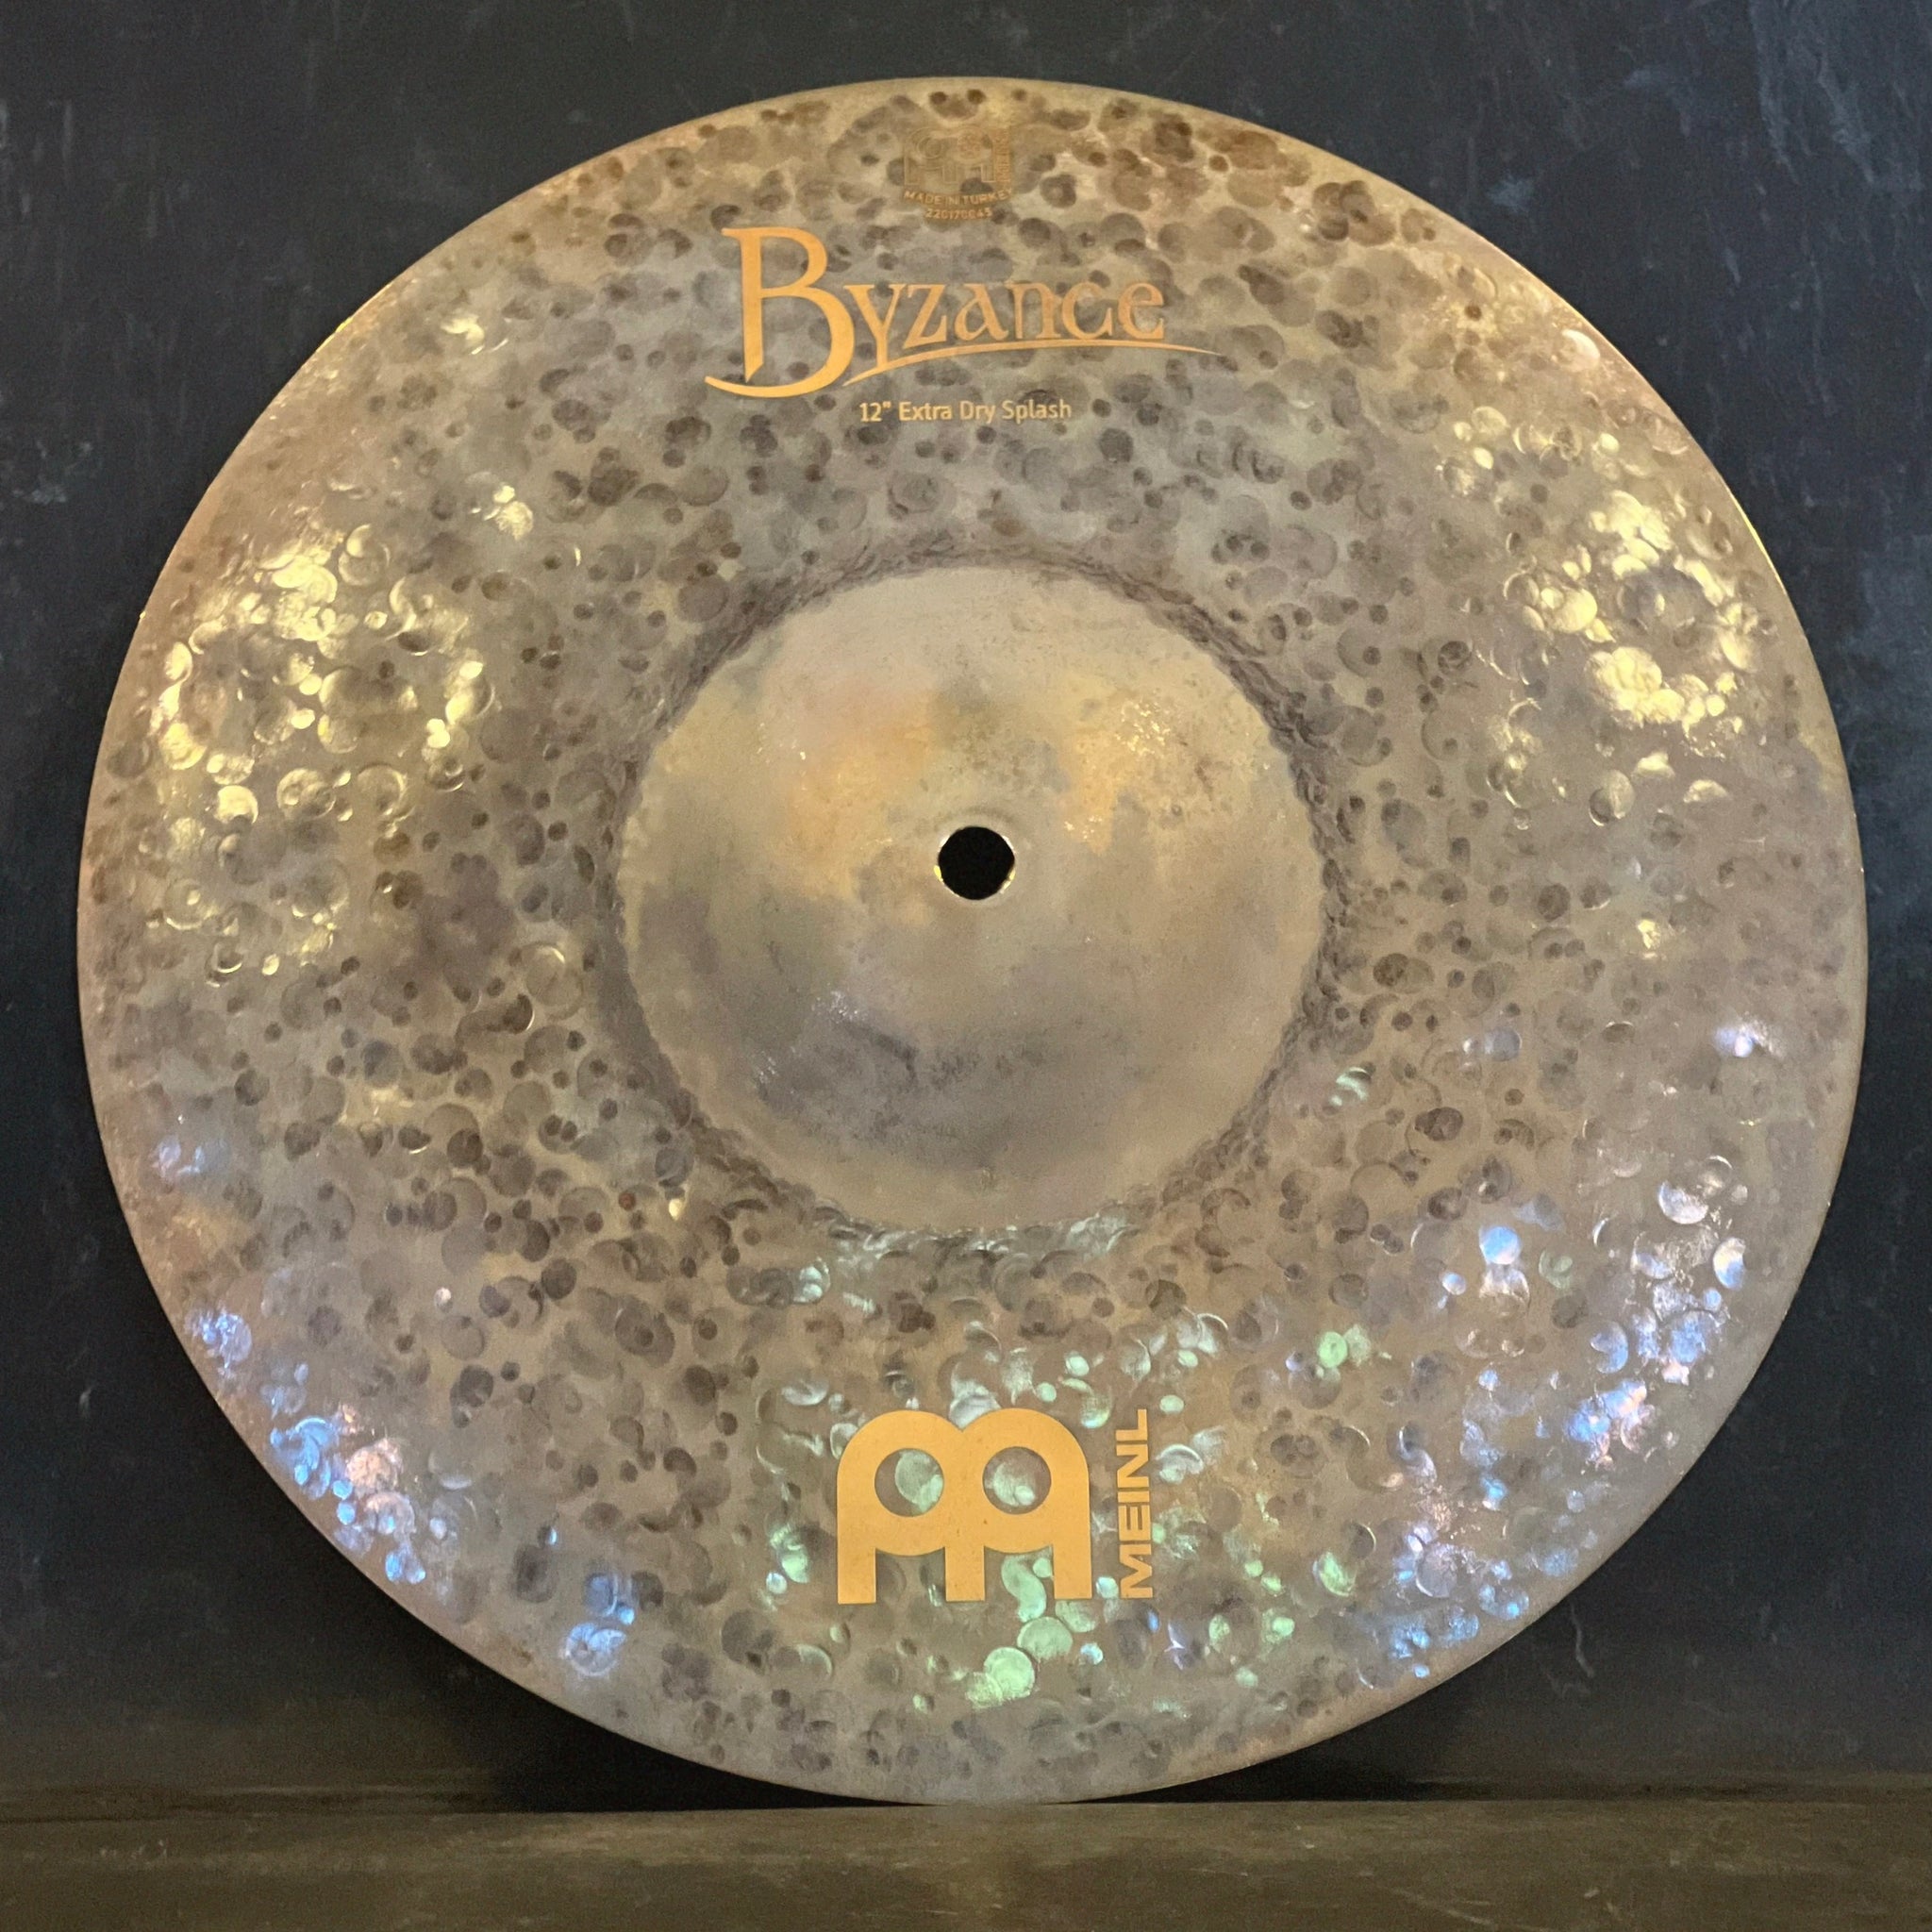 NEW Meinl 12" Byzance Extra Dry Splash Cymbal - 346g